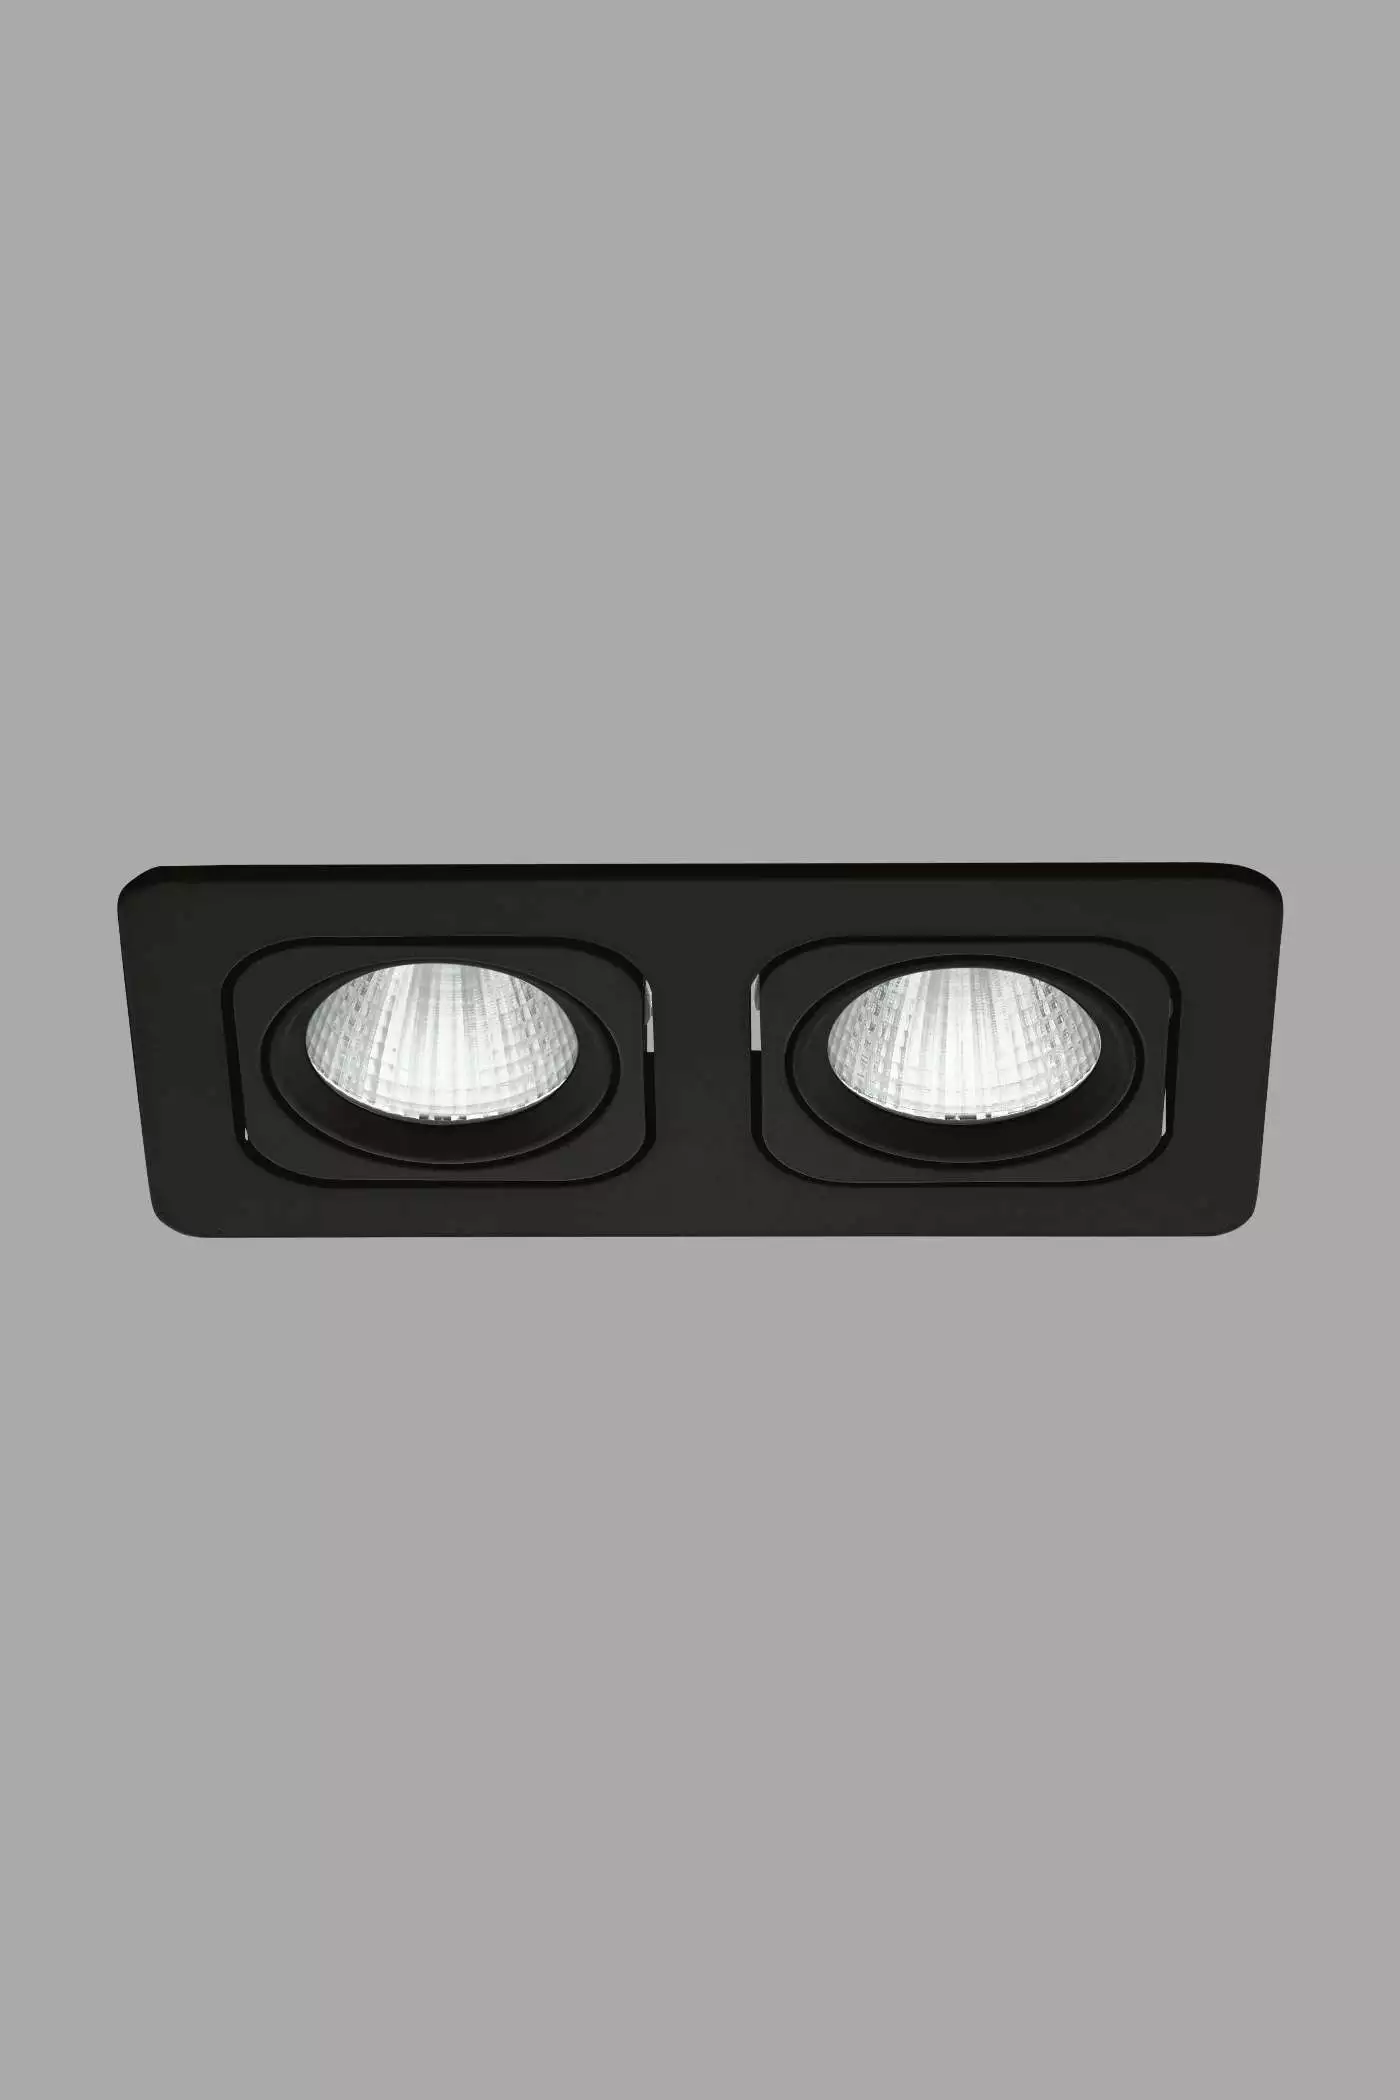   
                        Точечный светильник EGLO  (Австрия) 93604    
                         в стиле хай-тек.  
                        Тип источника света: встроенные светодиоды led.                         Форма: прямоугольник.                                                                          фото 1